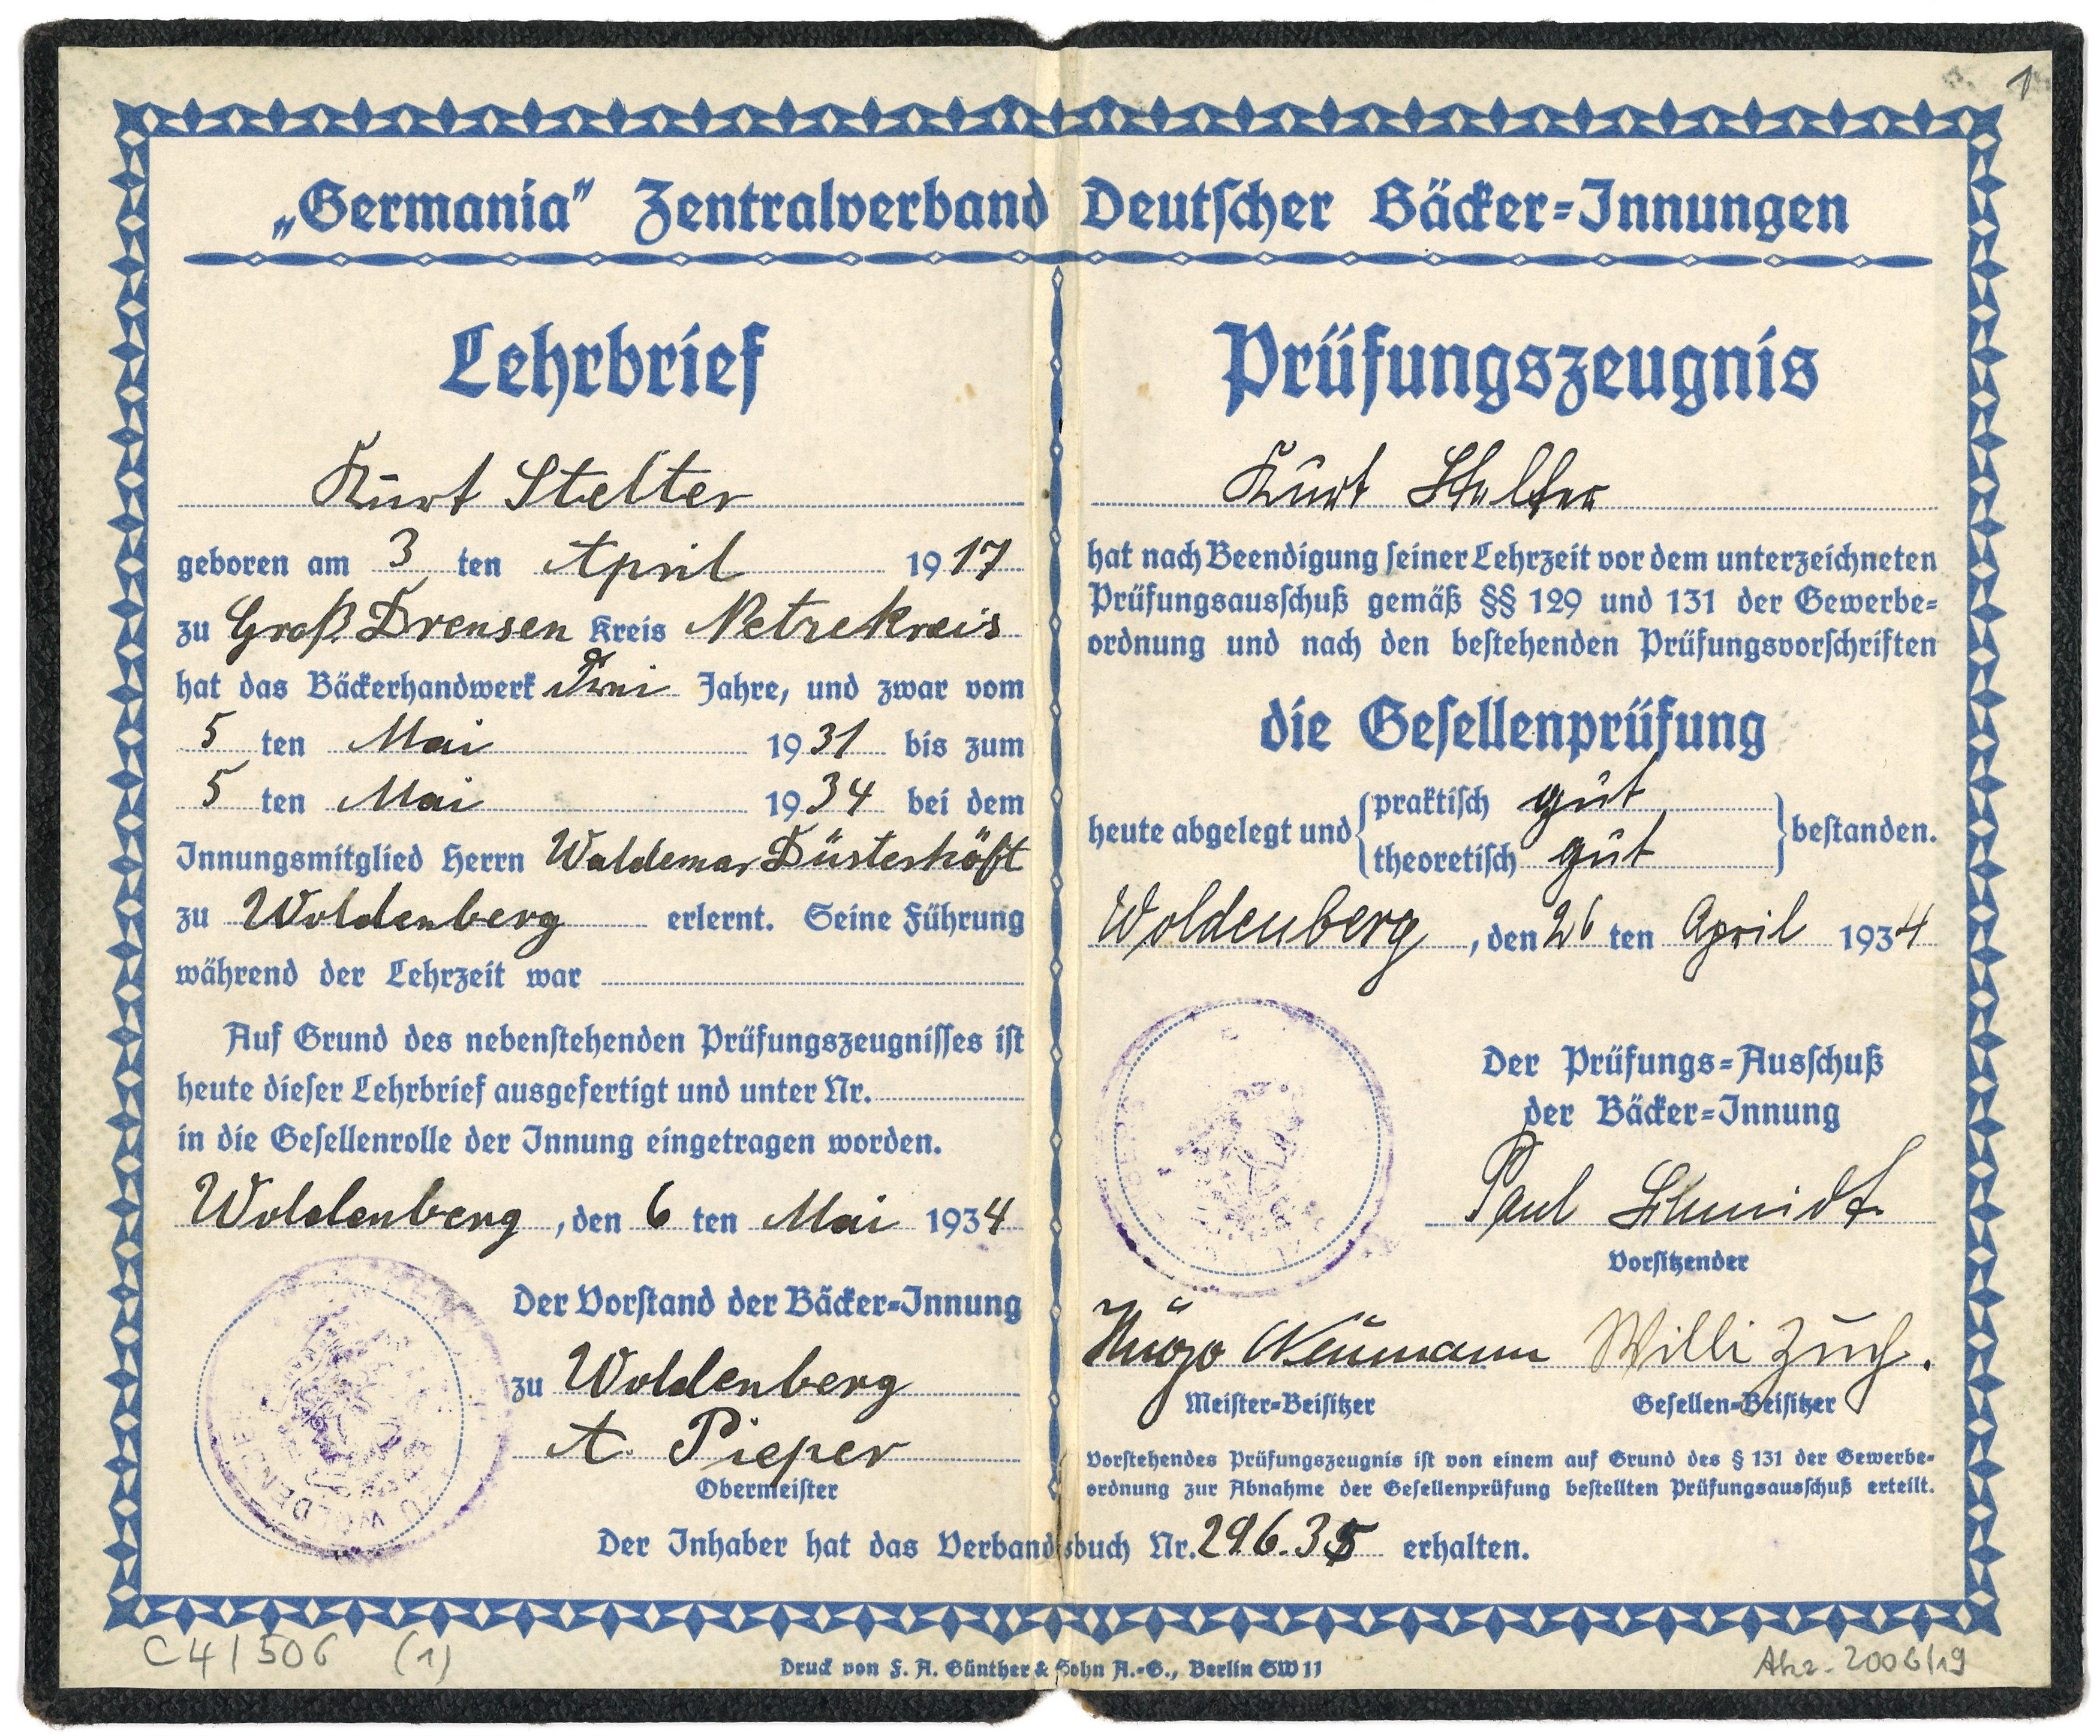 Lehrbrief für den Bäckergesellen Kurt Stelter in Woldenberg/Nm. 1934 (Landesgeschichtliche Vereinigung für die Mark Brandenburg e.V., Archiv CC BY)